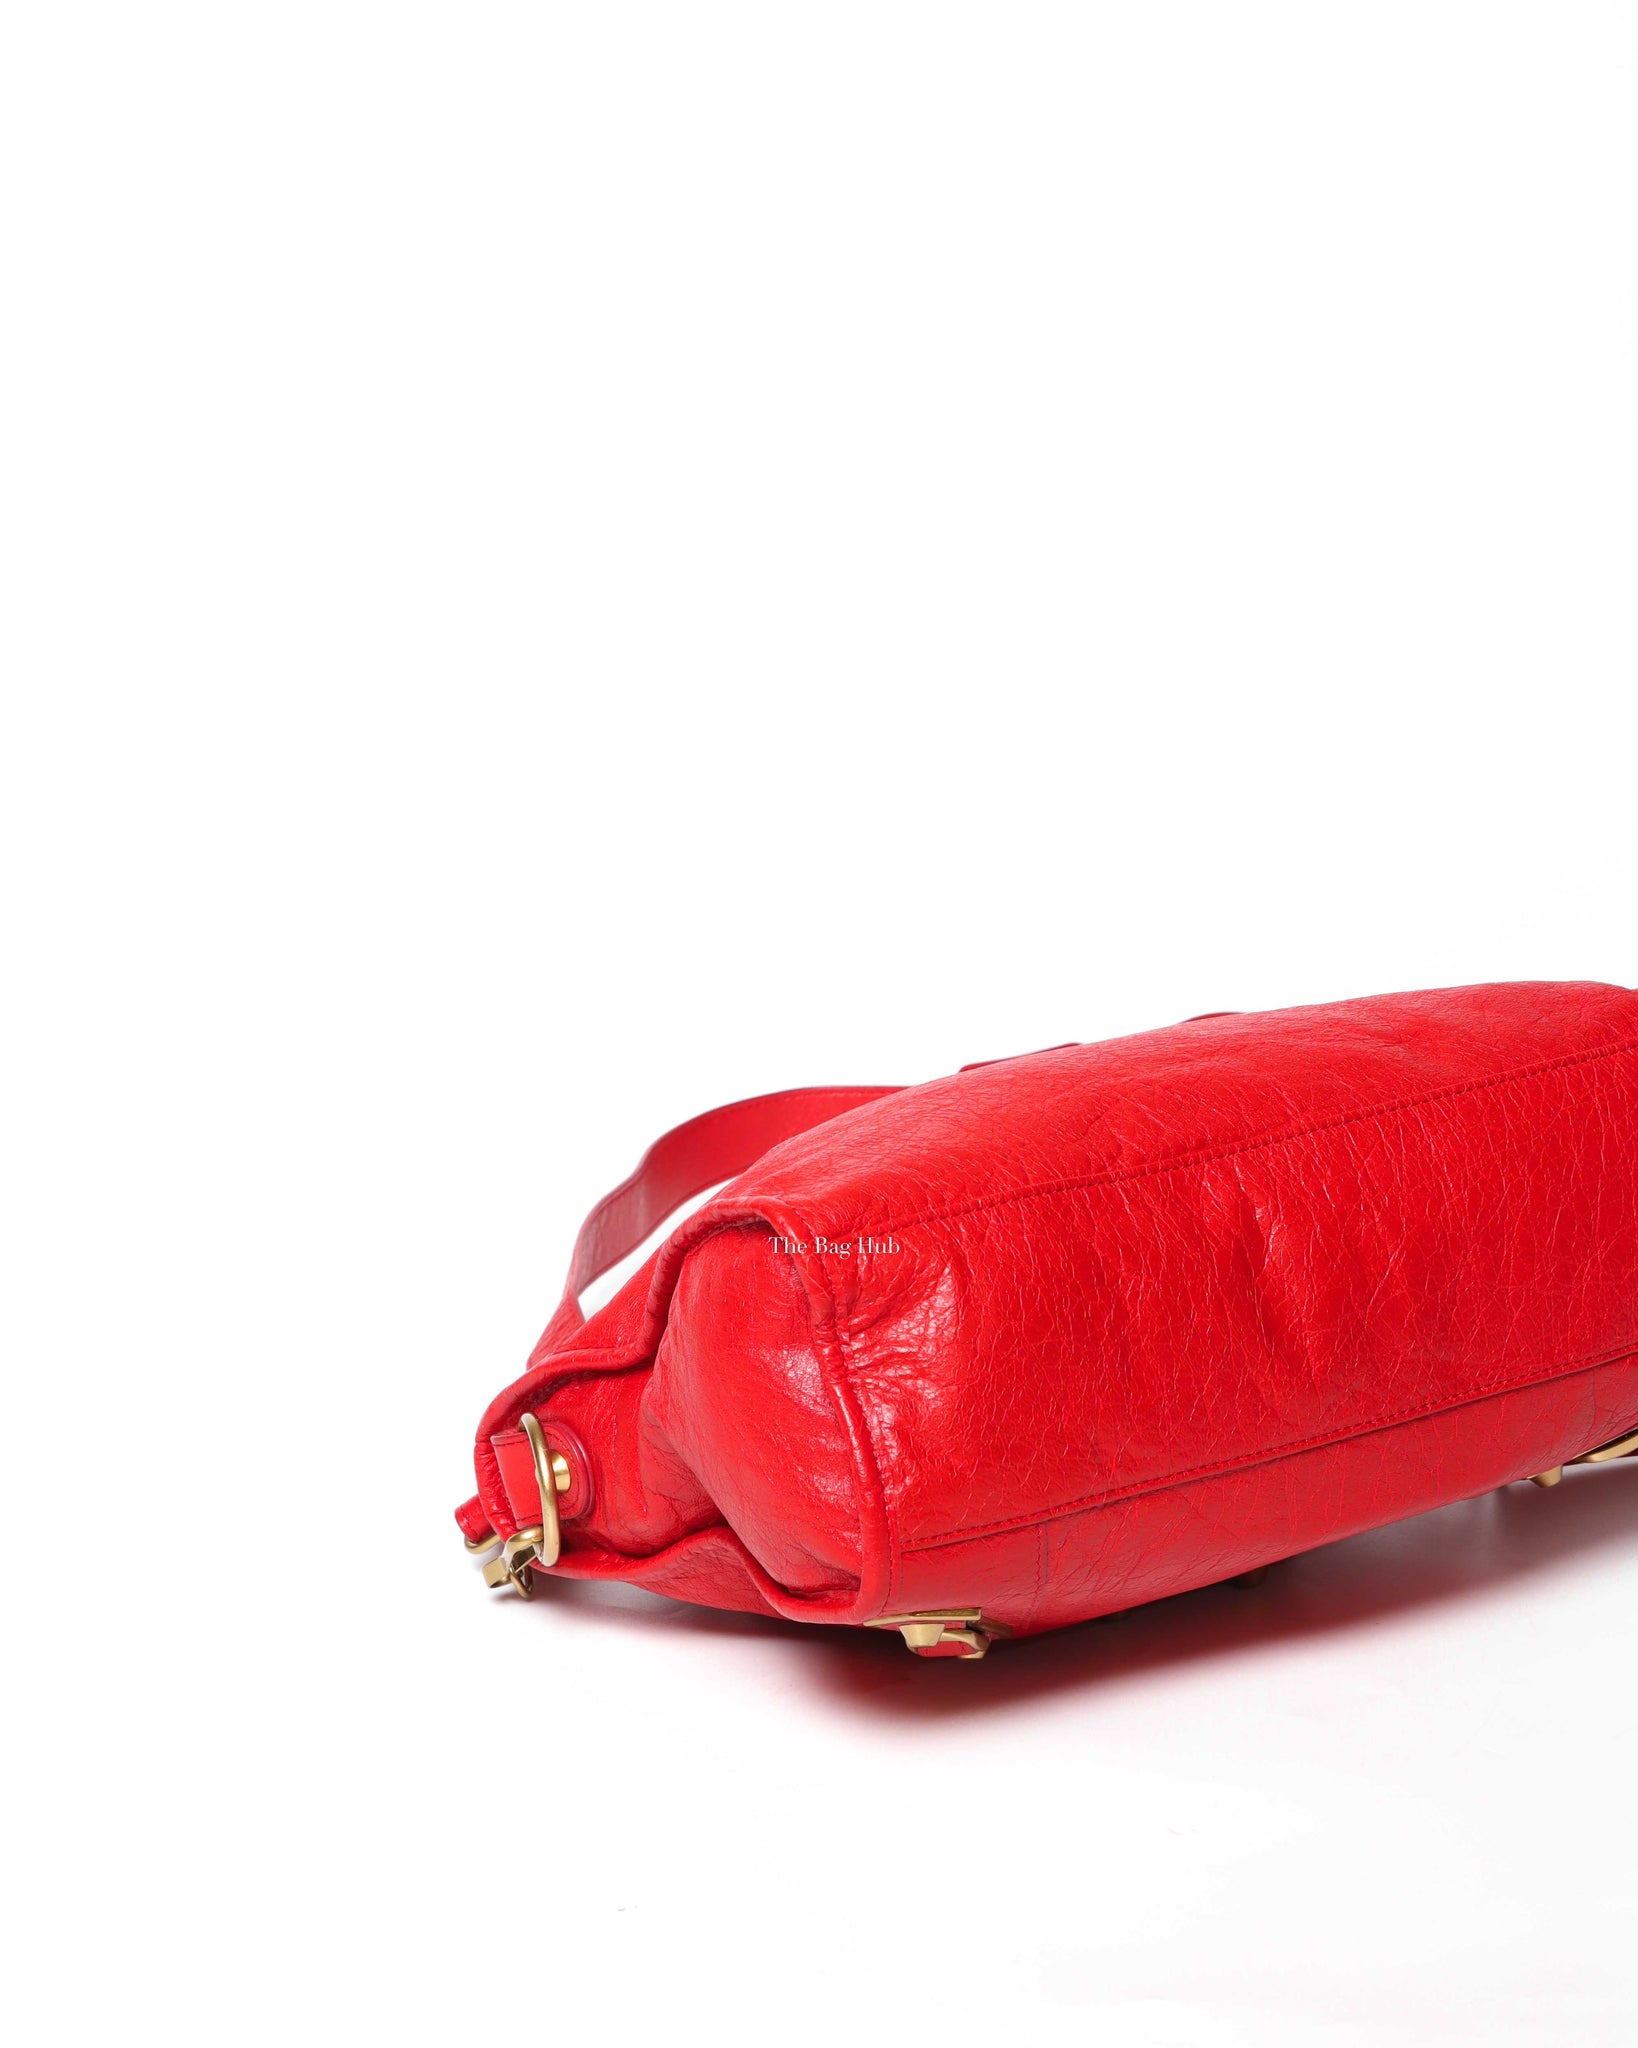 Balenciaga Red Mini Edge City Bag GHW